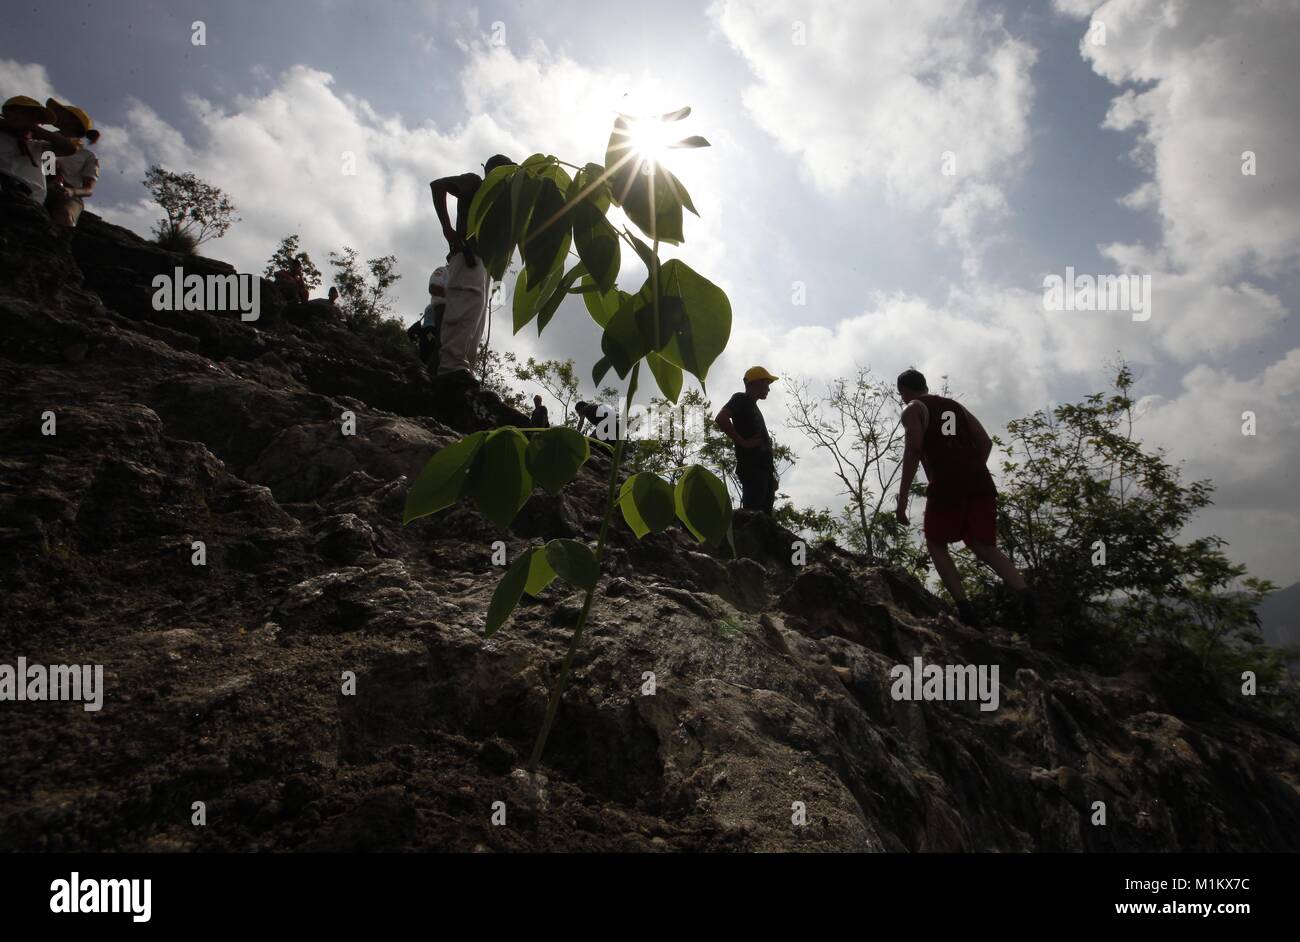 Mai 27, 2012 - Valencia, Carabobo, Venezuela - Juni 04., 2012. Gruppen von freiwilligen Teilnahme an einer Baumpflanzaktion auf dem Casupo Hügel, am 27. Mai durchgeführt, mit Bäumen im Fernando Pe''""" alver Park Baumschule gekeimt. Fernando Pe''""" alver Park, gegründet 1983, verfügt über 22 Hektar für die Erholung, die die Beziehung zwischen Mensch und Natur fördern, gekreuzt wird durch den Fluss Cabriales, es gibt vielfältige Ökosysteme, und es gibt eine große Vielfalt von Flora und Fauna. Der Park ist abhängig von der Regierung des Bundesstaates Carabobo, die Wartungskosten durch eine Baumschule minimiert, als s Stockfoto